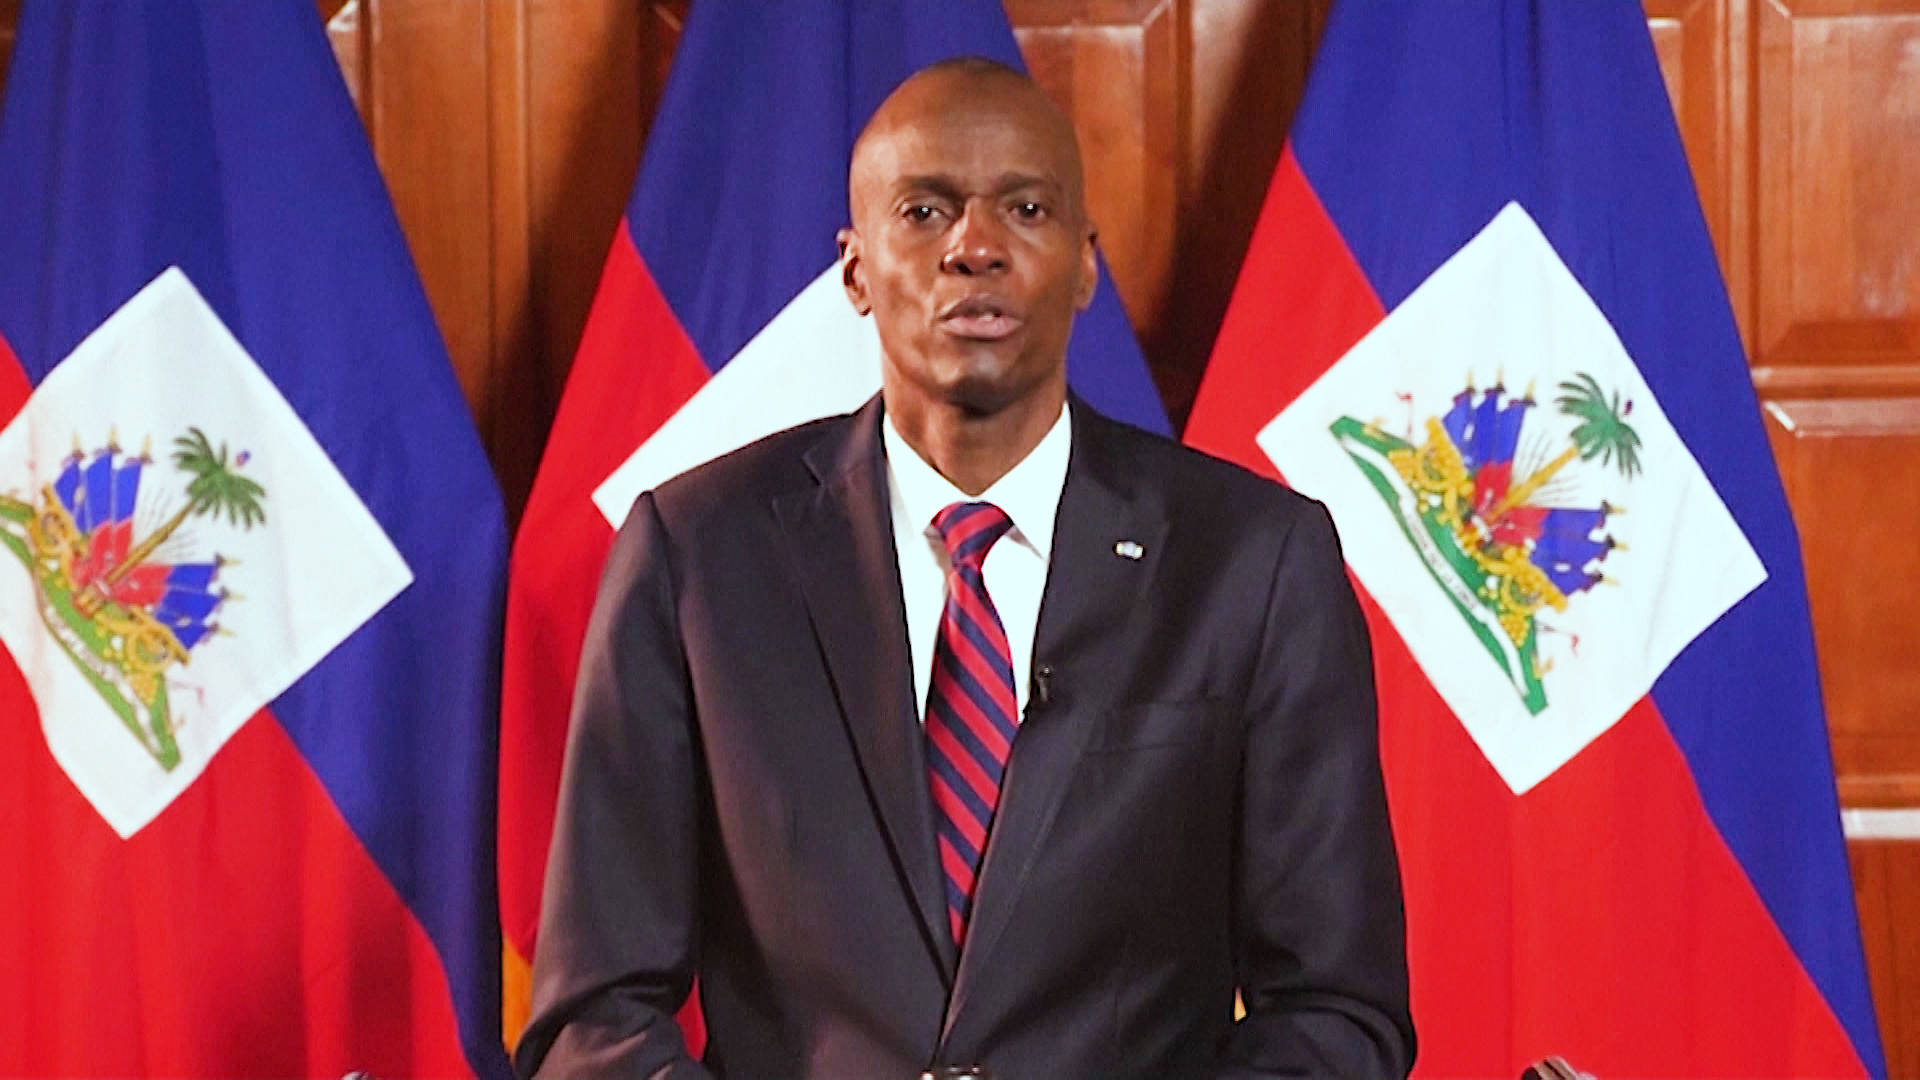 La autopsia del presidente de Haití reveló que recibió de 12 balazos